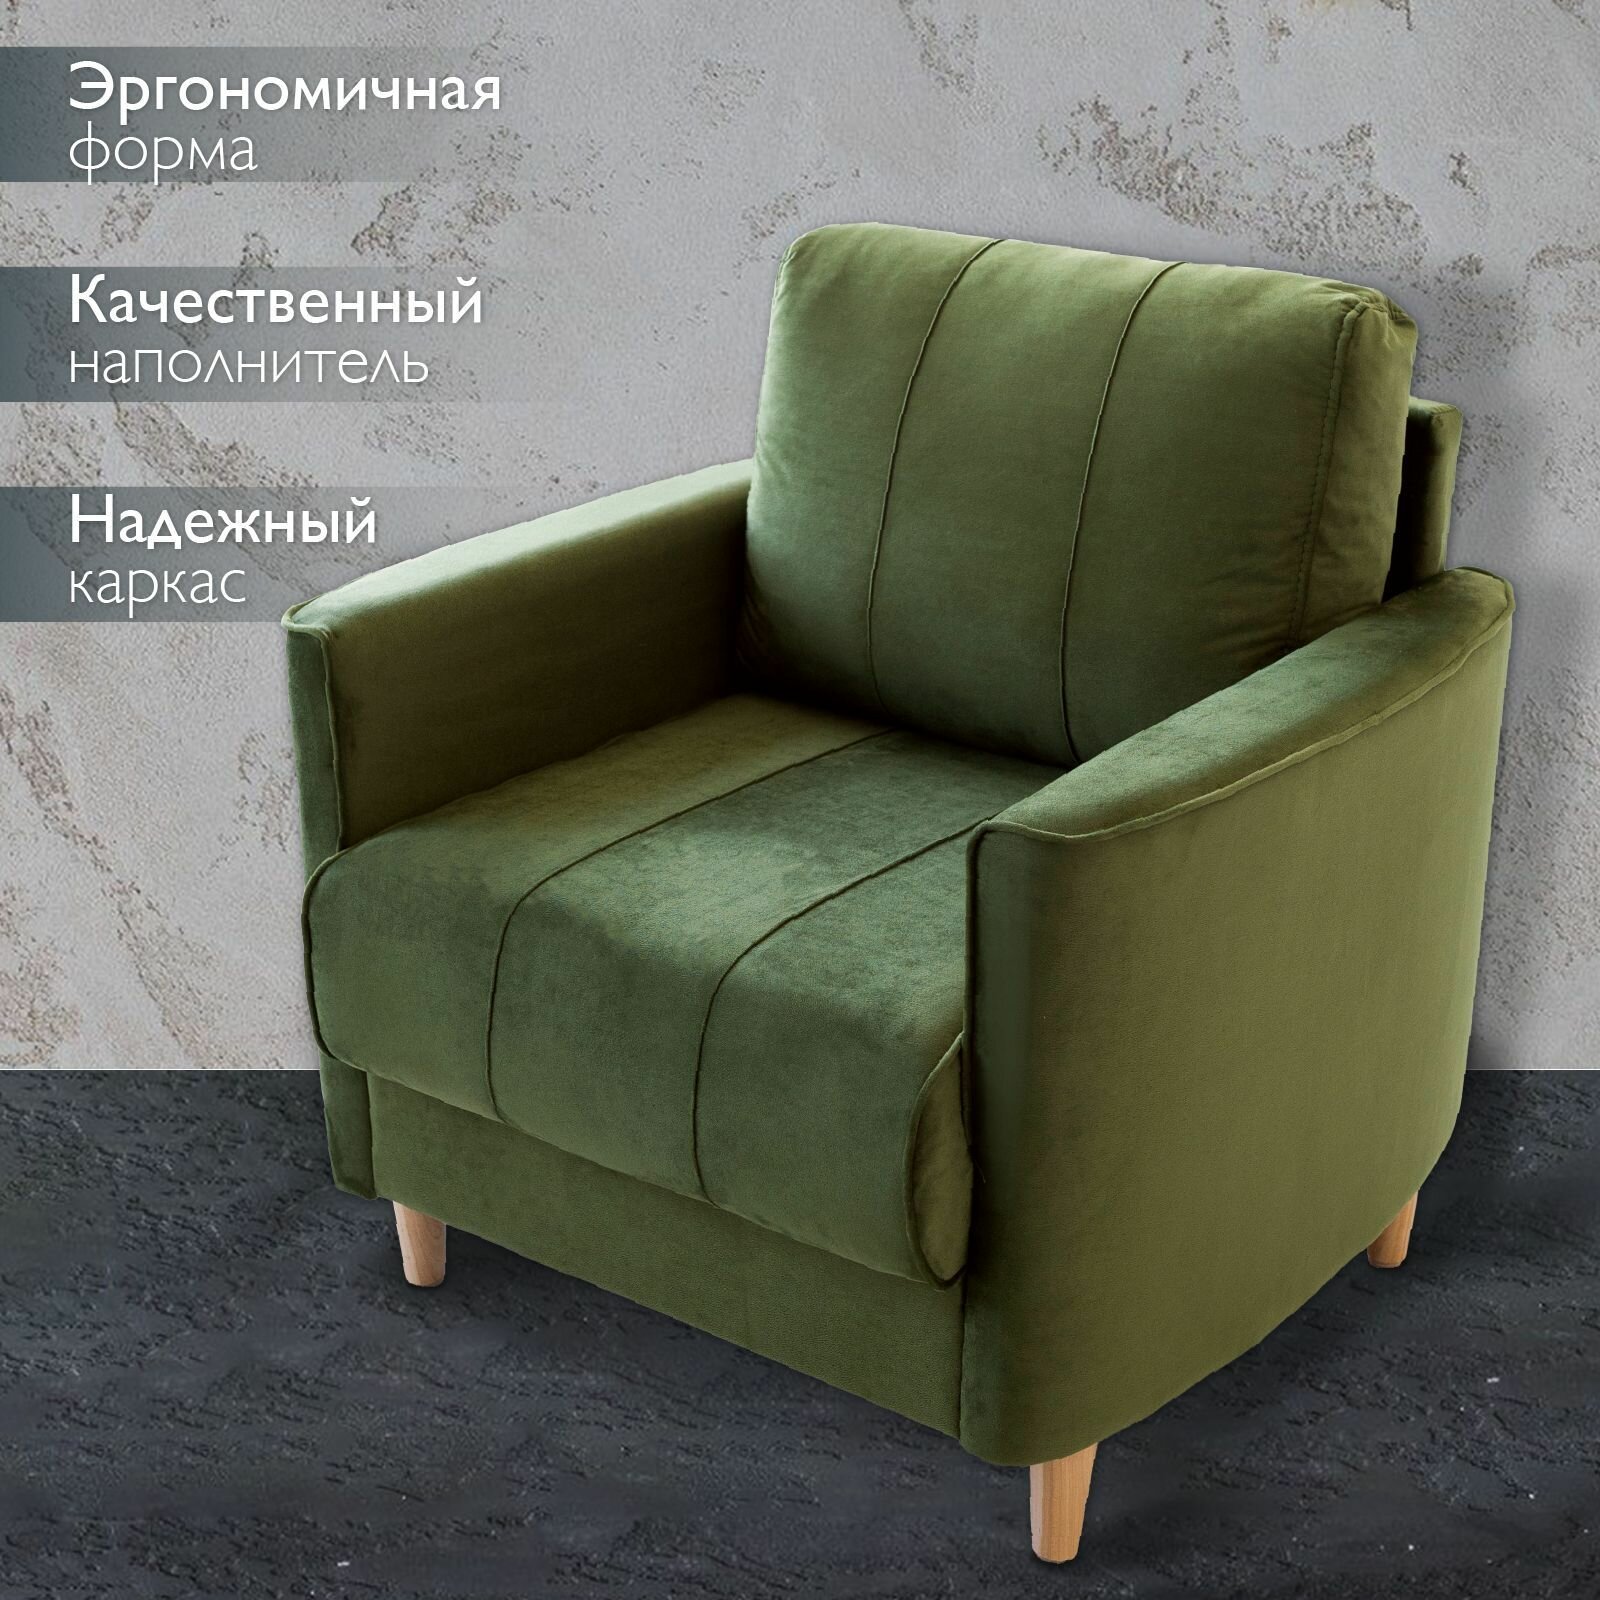 Кресло мягкое интерьерное для отдыха Марсель, на деревянных ножках, офисное кресло, для дома, гостиной, для дачи, на балкон, обивка вельвет оливковый, Ами Мебель, Беларусь